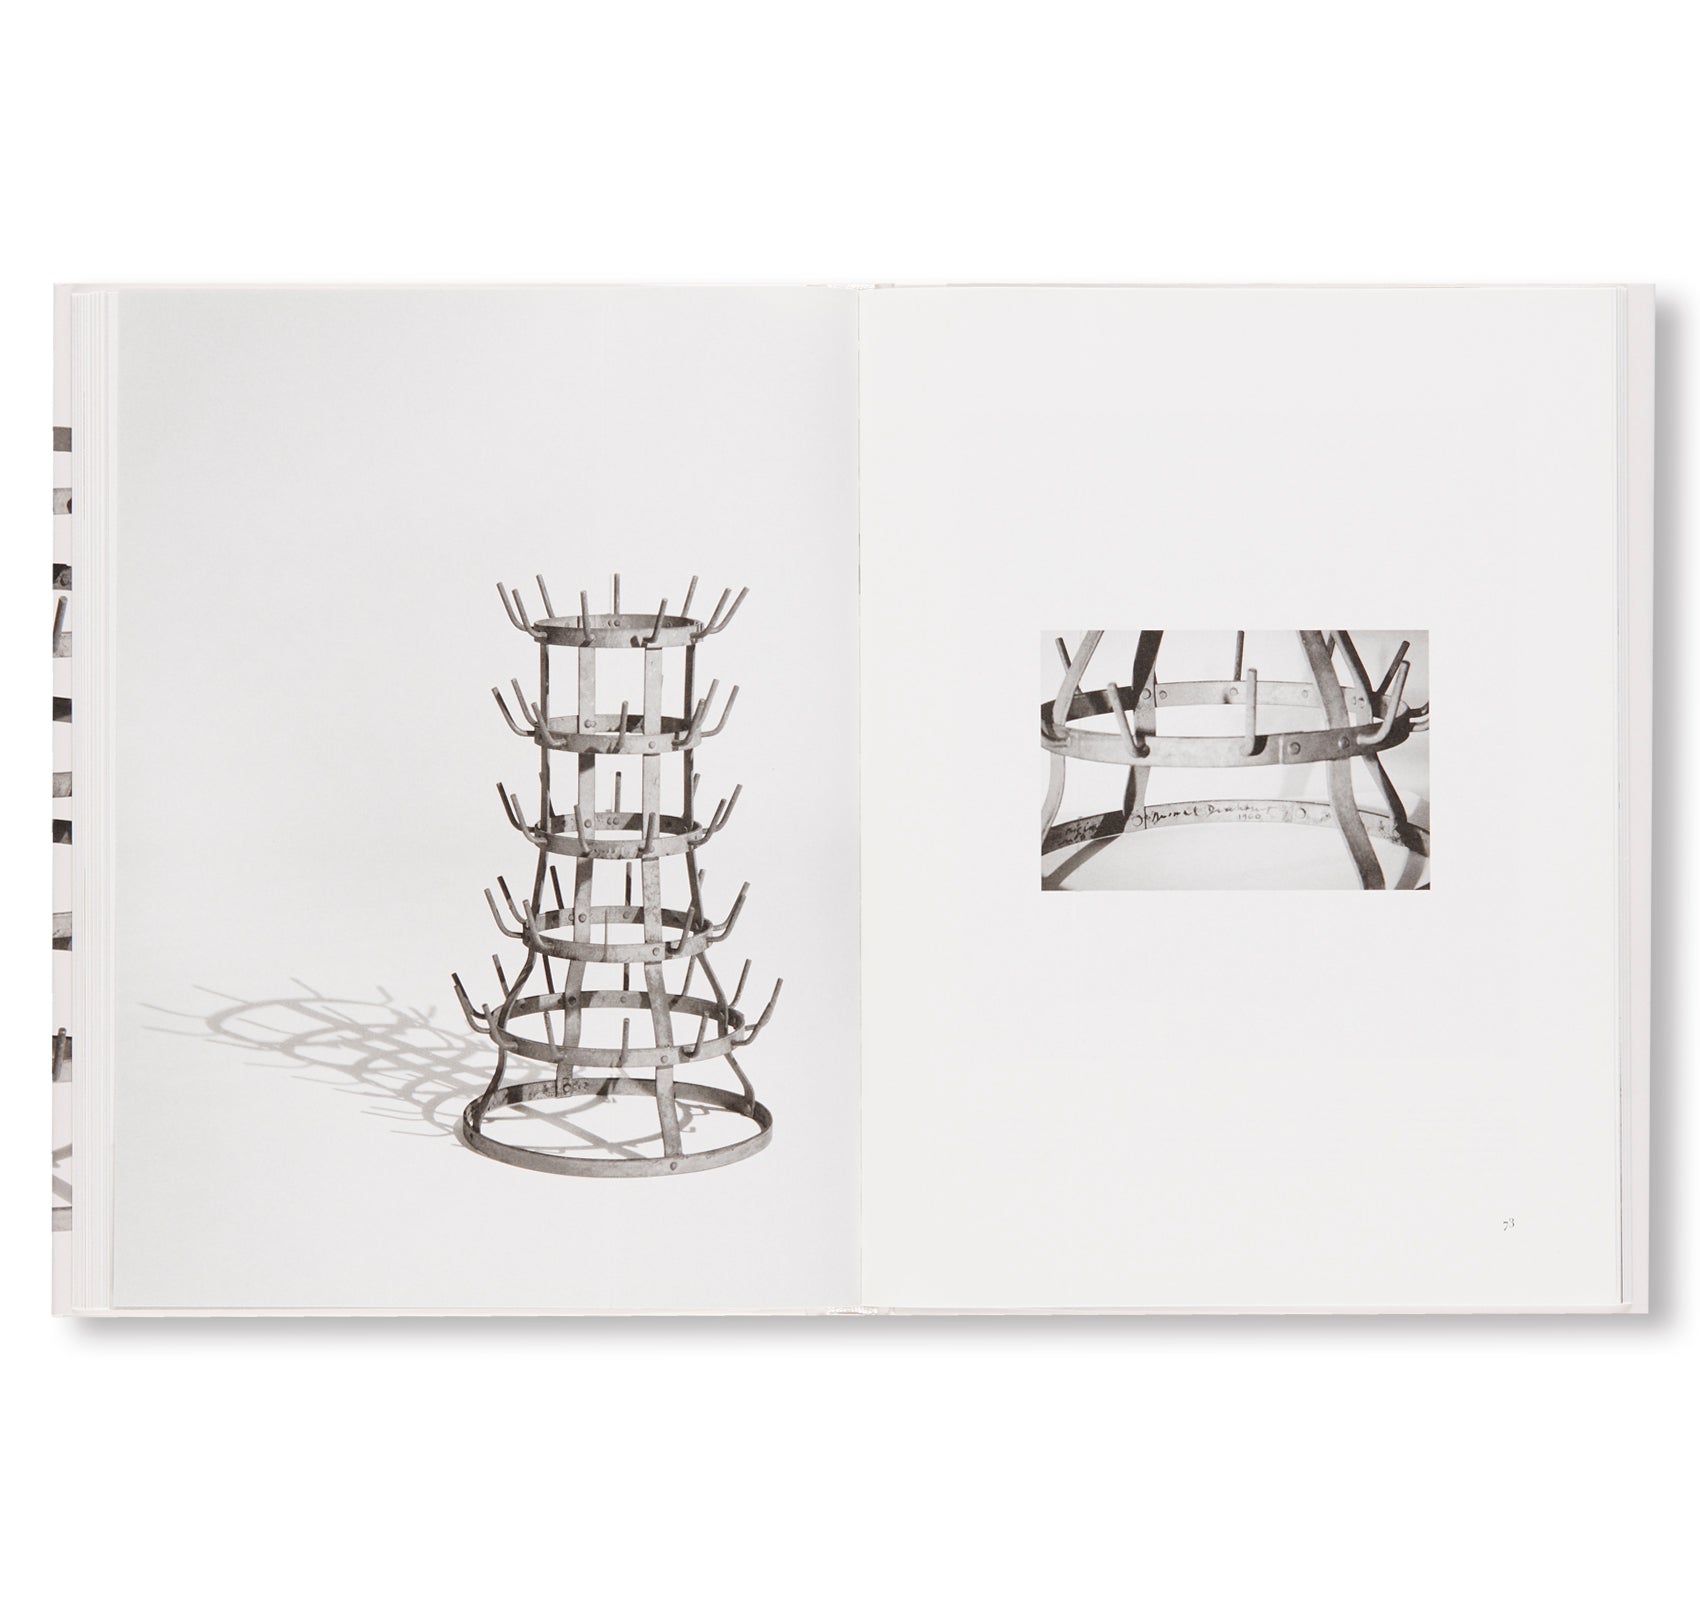 PORTE-BOUTEILLES by Marcel Duchamp